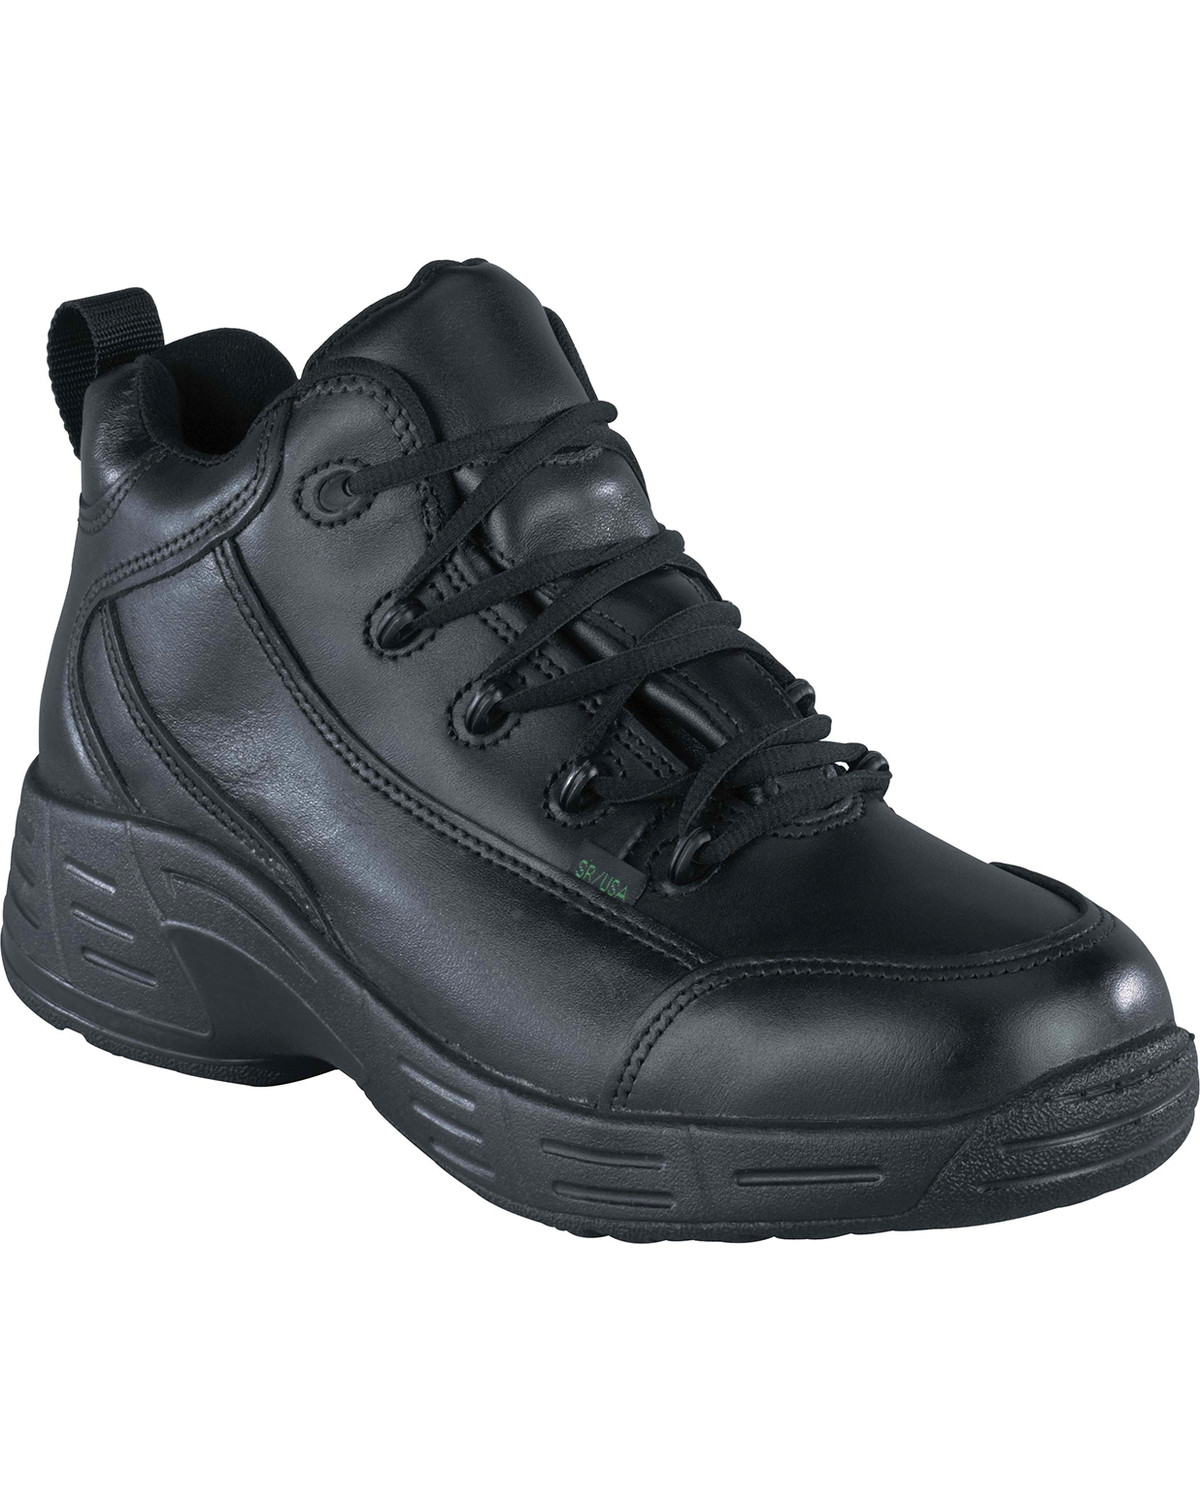 Reebok Men's TCT Waterproof Sport Hiker Boots - USPS Approved